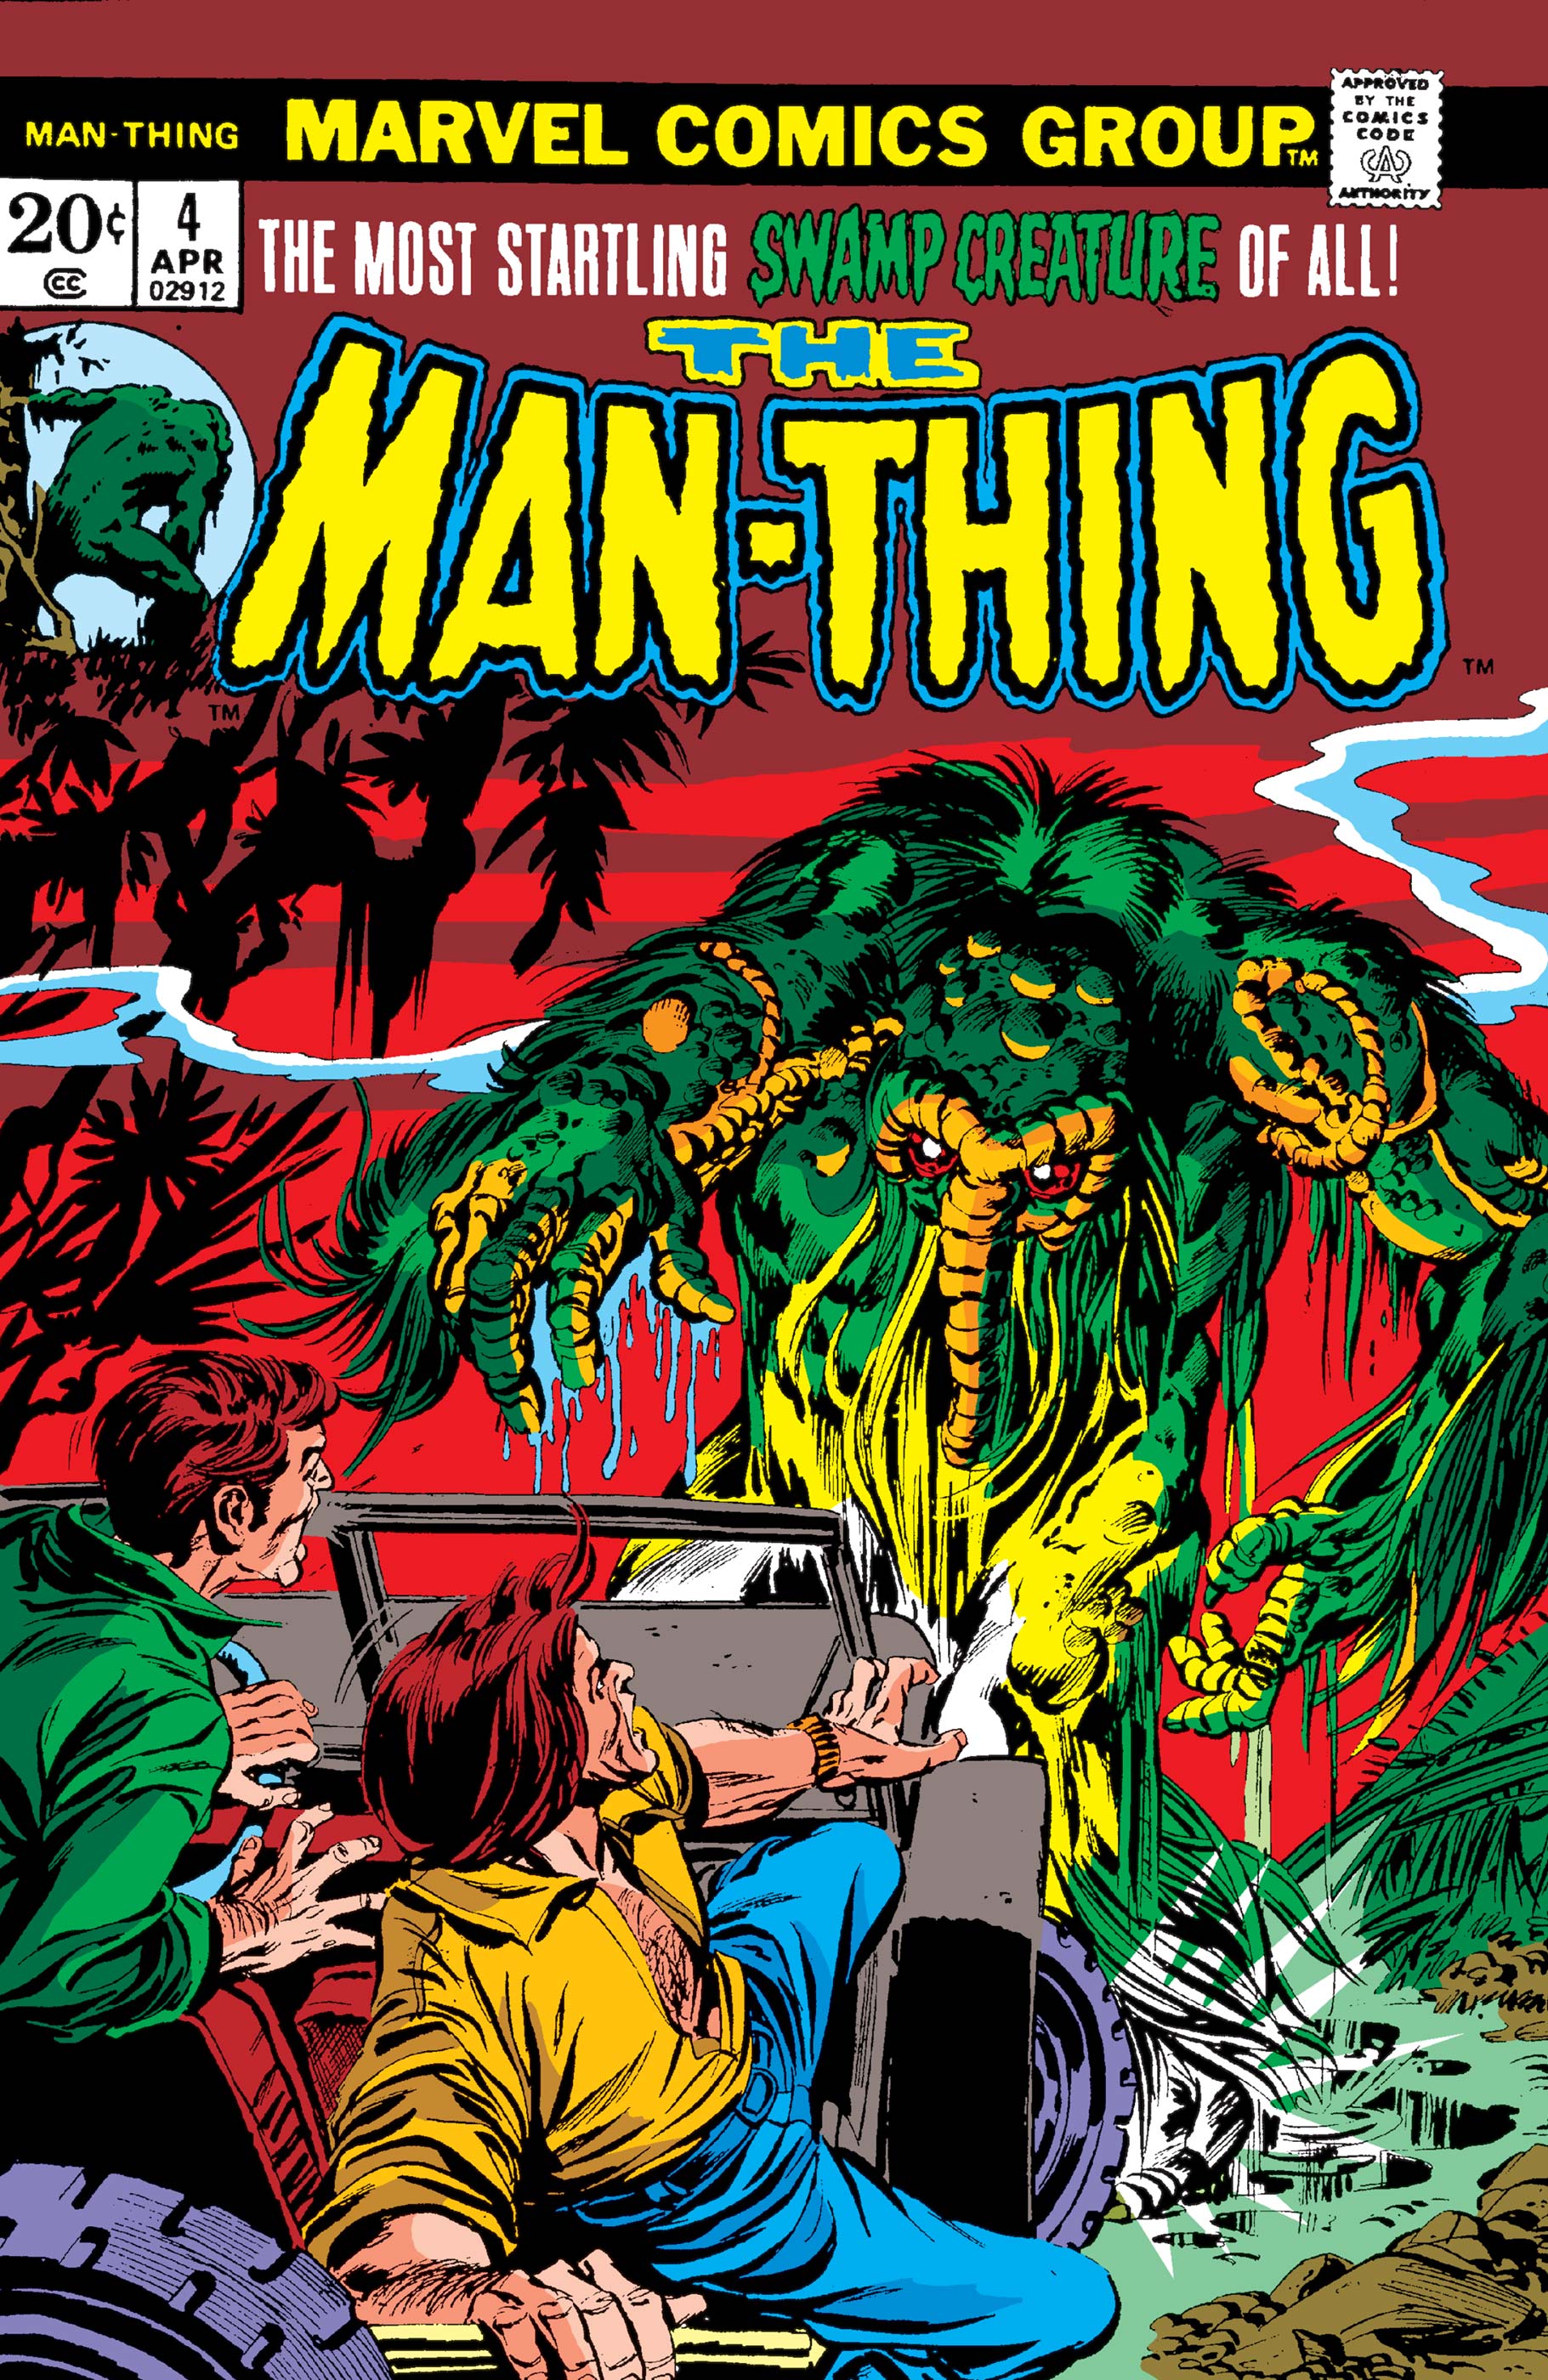 Man-Thing (1974) #4